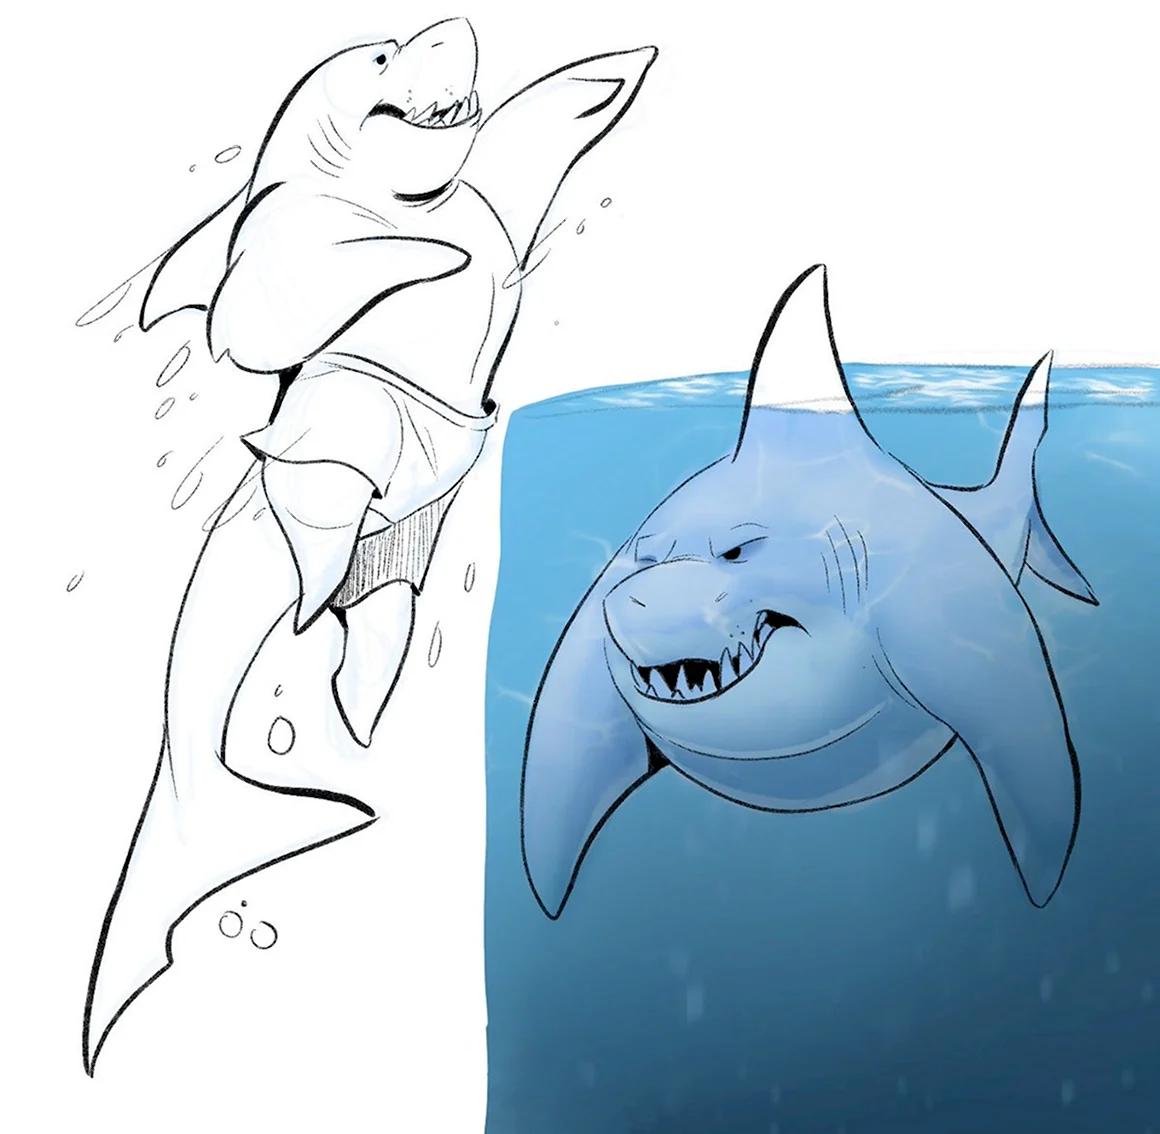 Рисунок акулы для сравнения